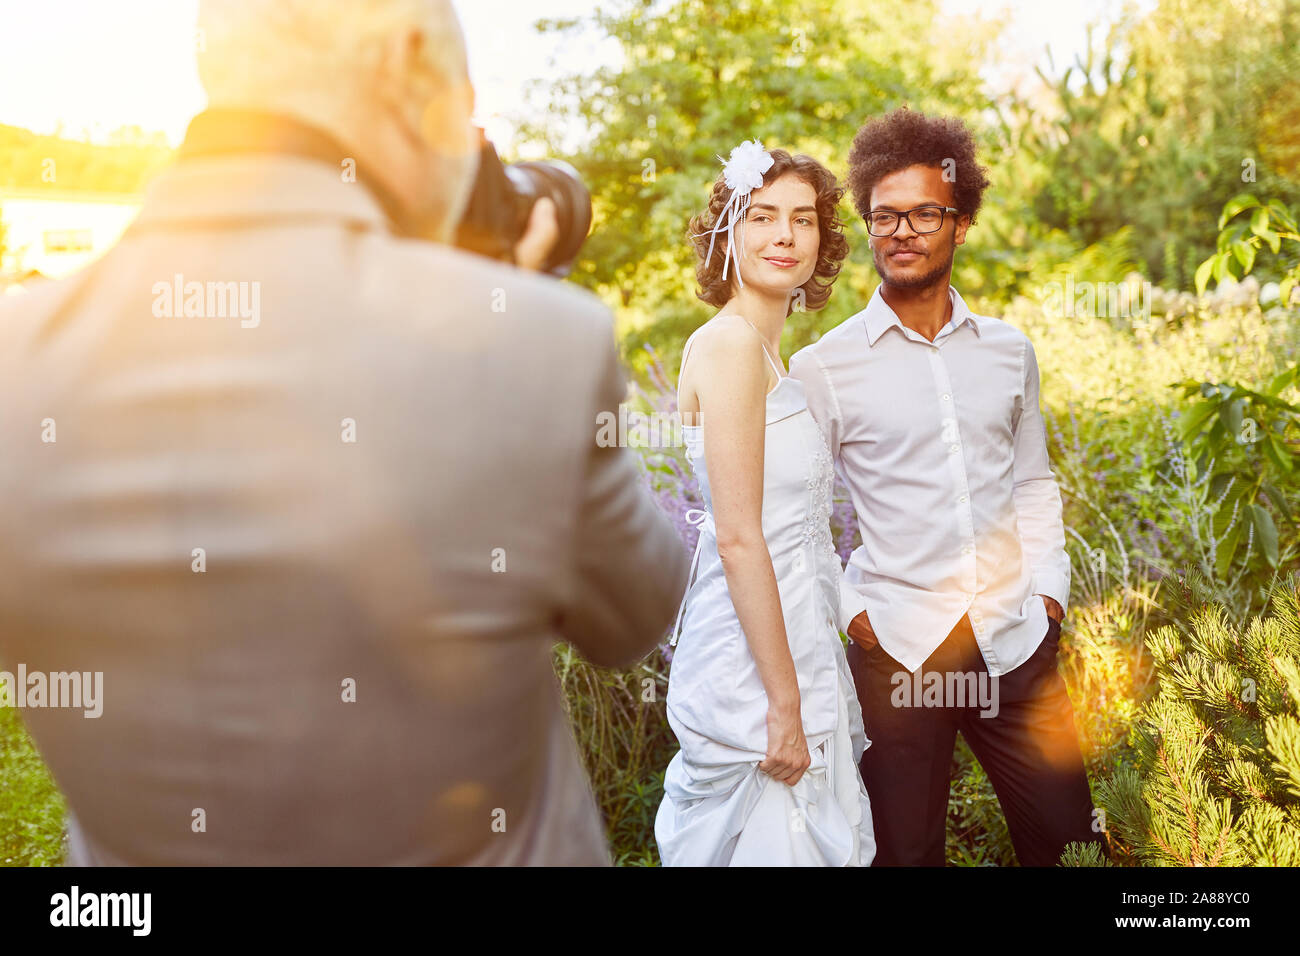 Fotografo per matrimoni a scattare foto di sposi novelli a un matrimonio in natura Foto Stock